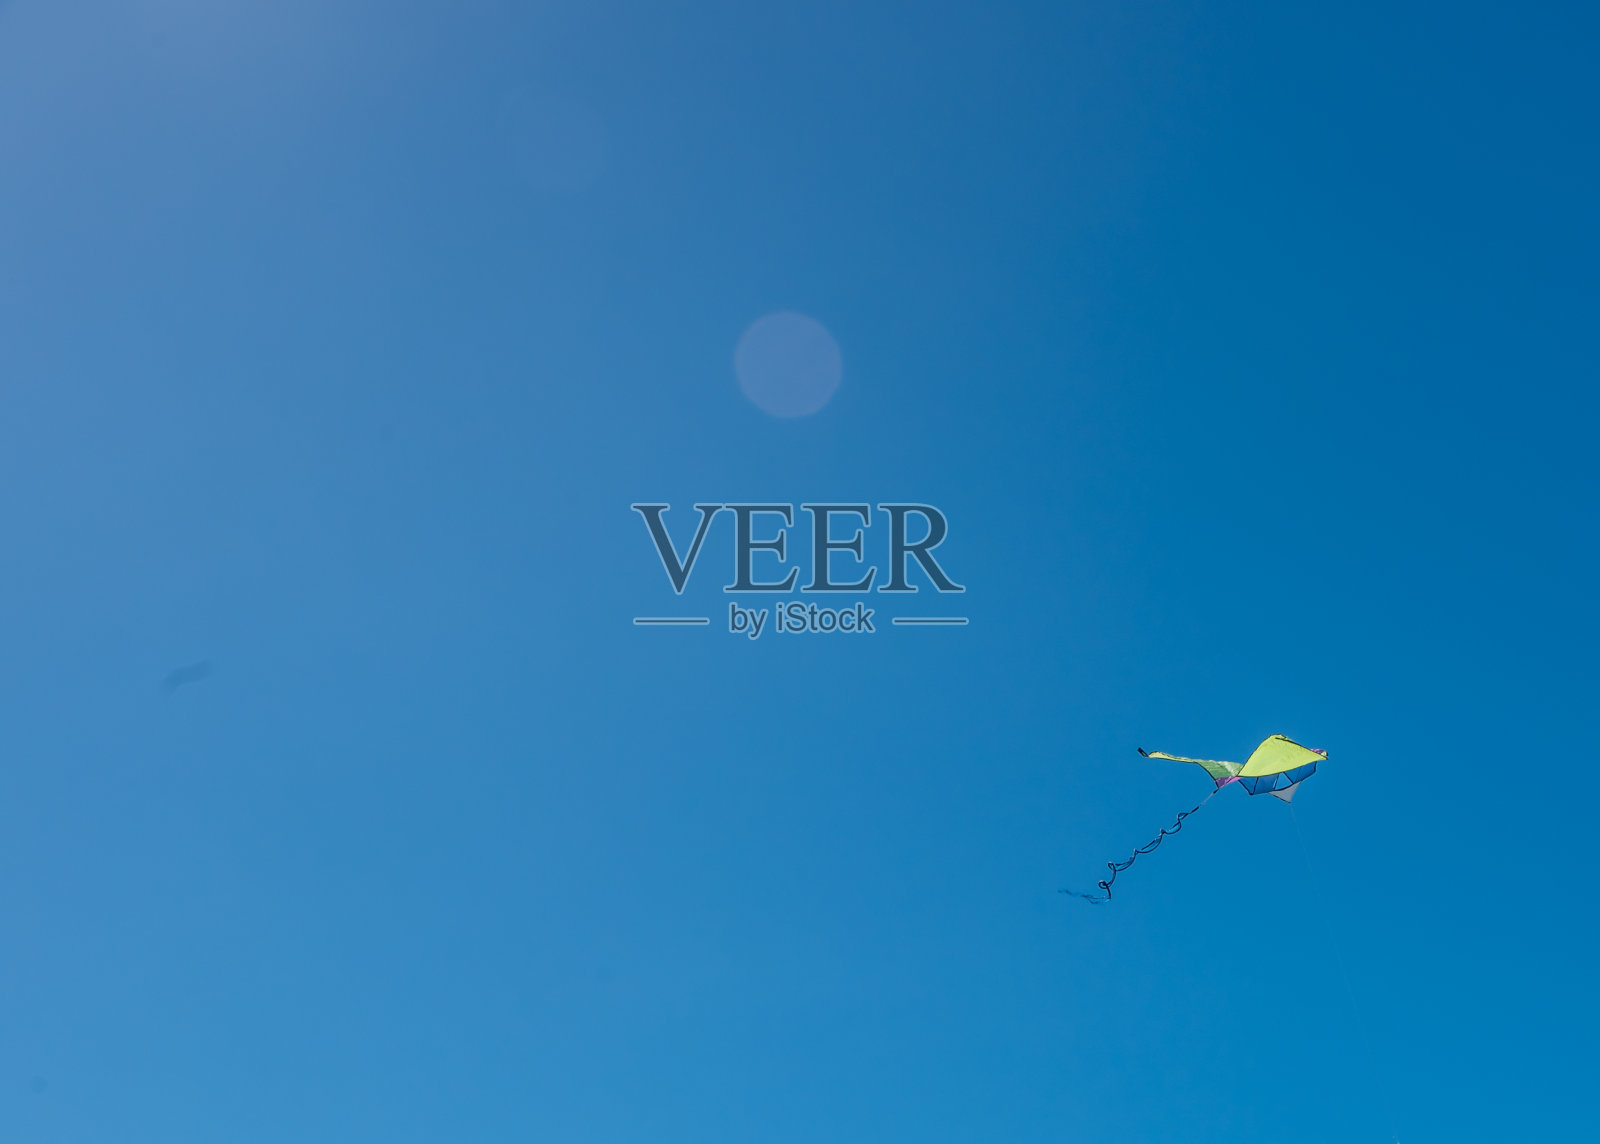 风筝在晴朗的蓝天里飞翔照片摄影图片